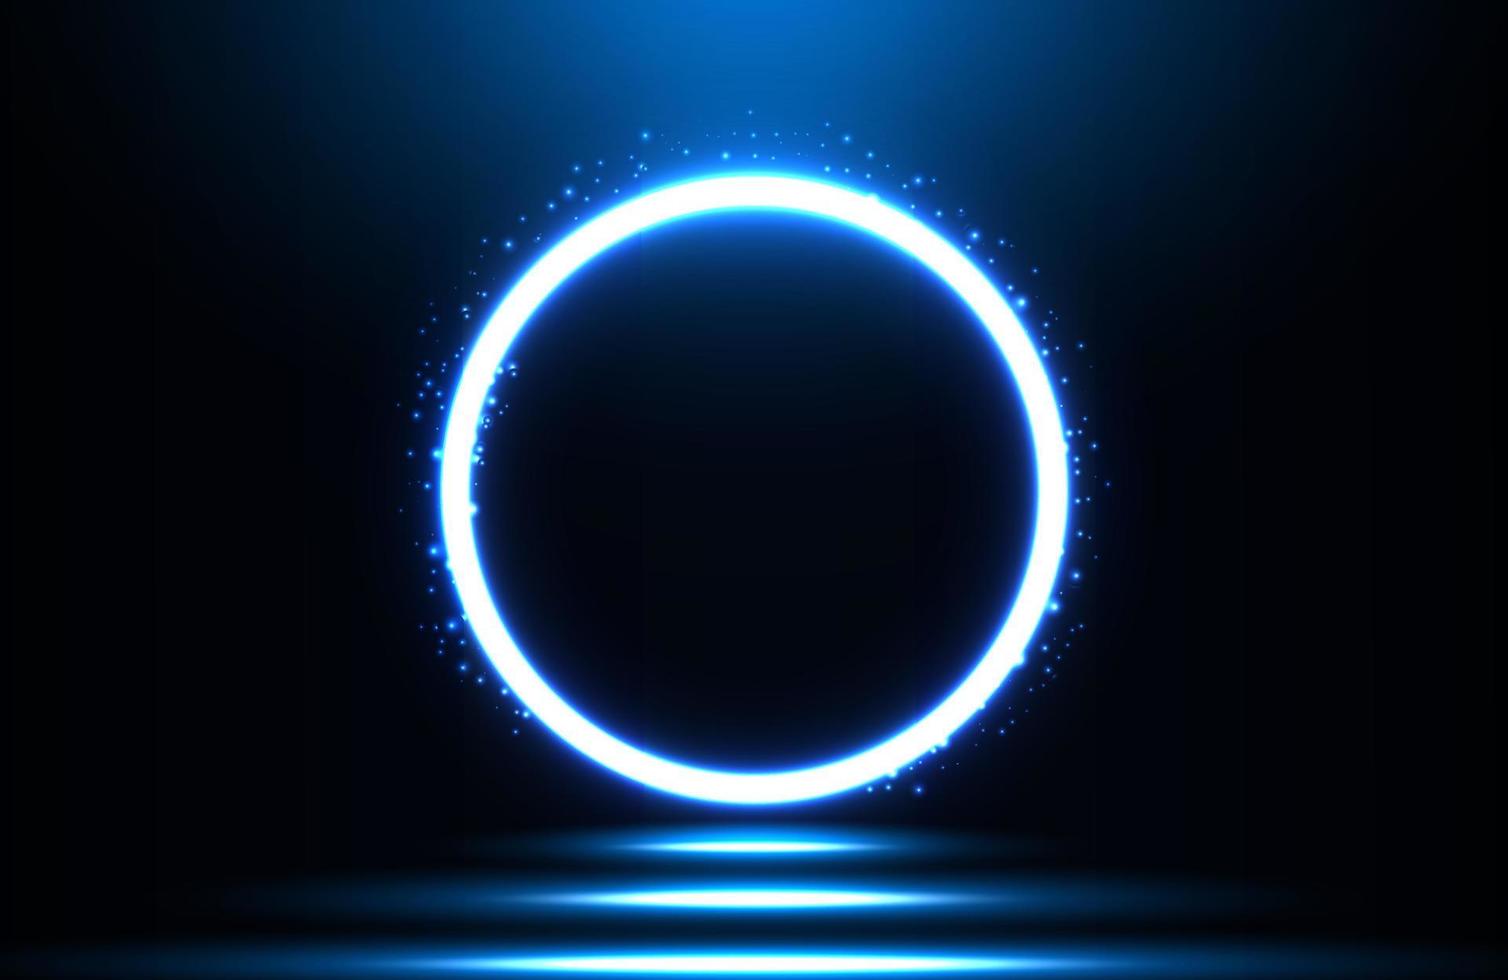 Kreis Neonlichteffekt auf dunklem Hintergrund, futuristisches Techno-Konzept vektor